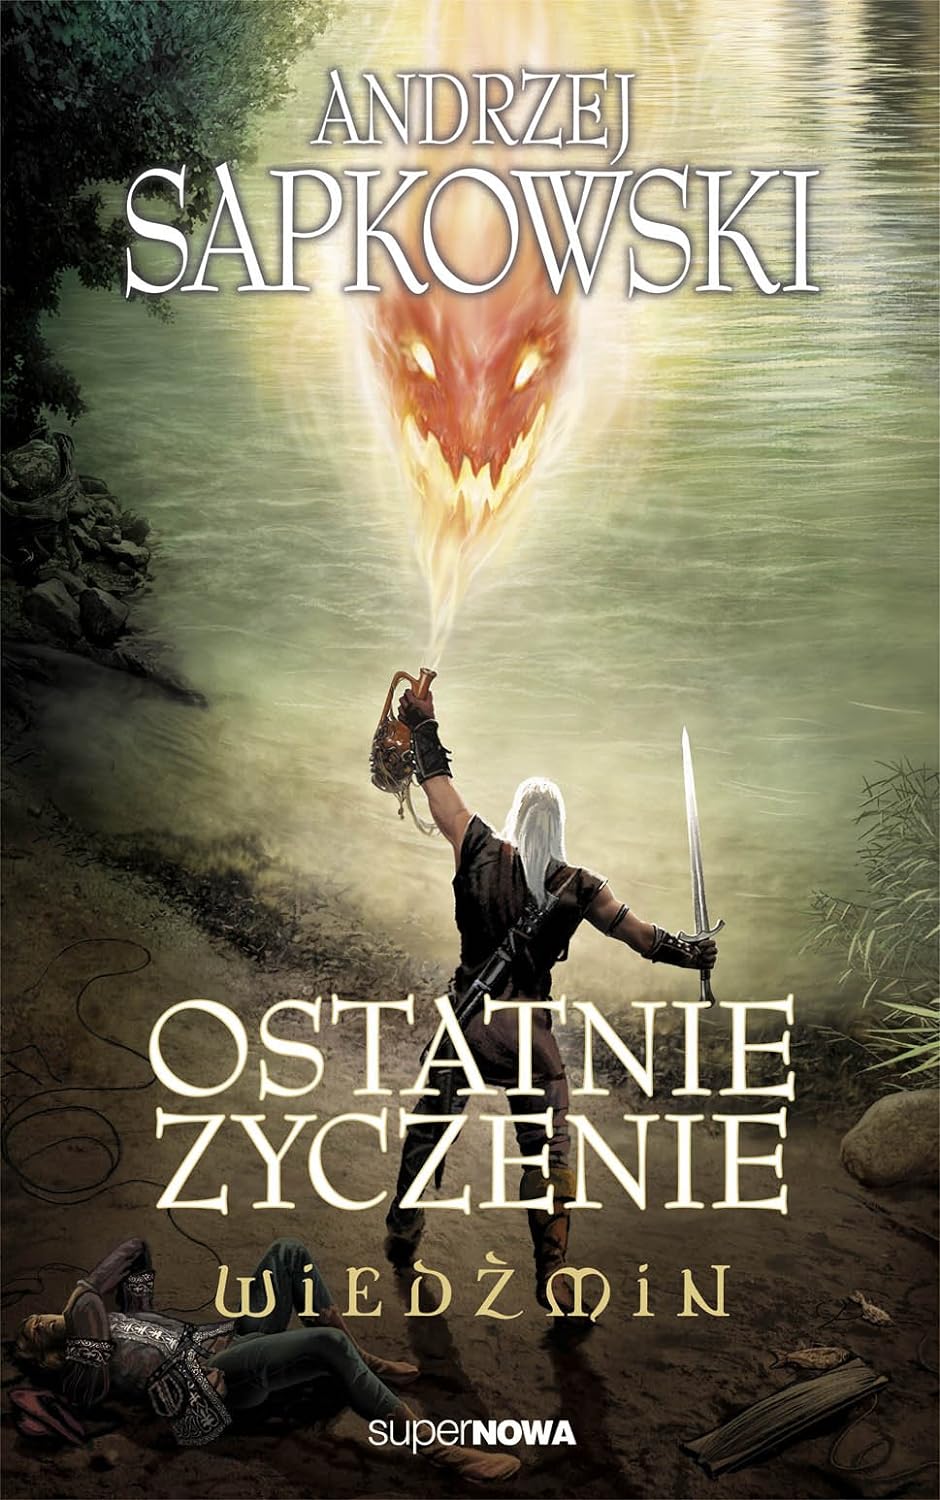 Andrzej Sapkowski: Ostatnie życzenie (Polish language, 2014)